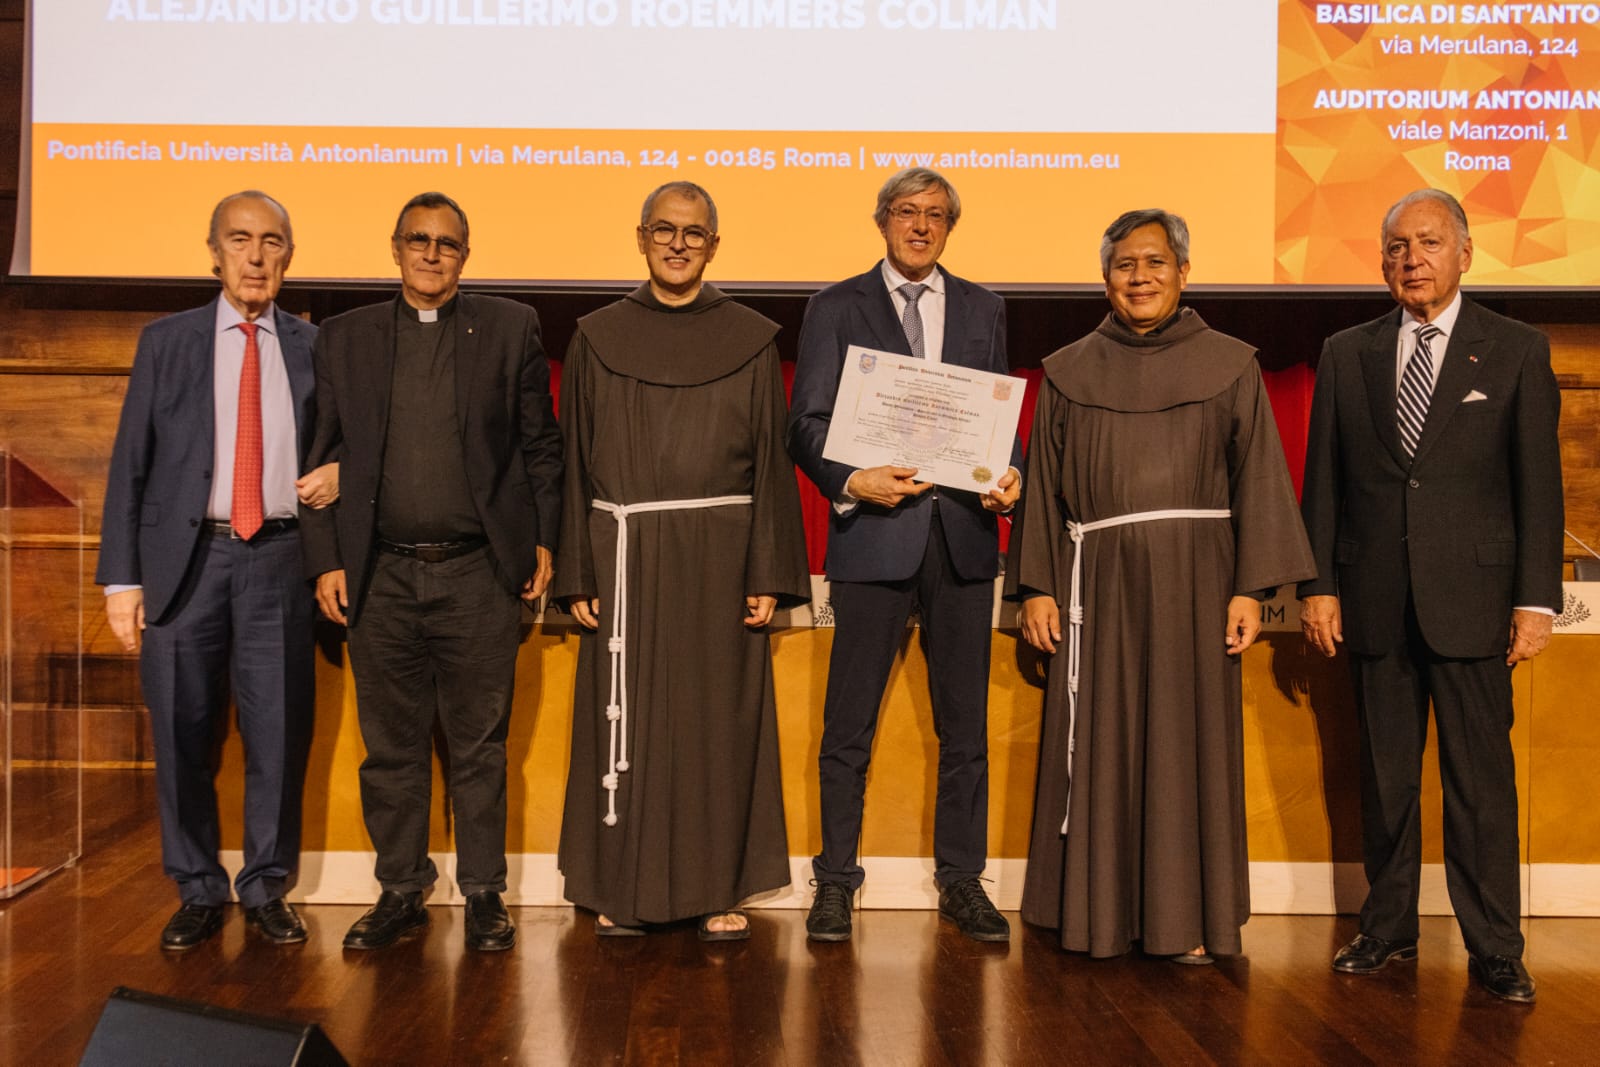 Alejandro Guillermo Roemmers nhận bằng tiến sĩ Honoris Causa ở Rome: Đại sứ của Huynh đệ đoàn toàn cầu